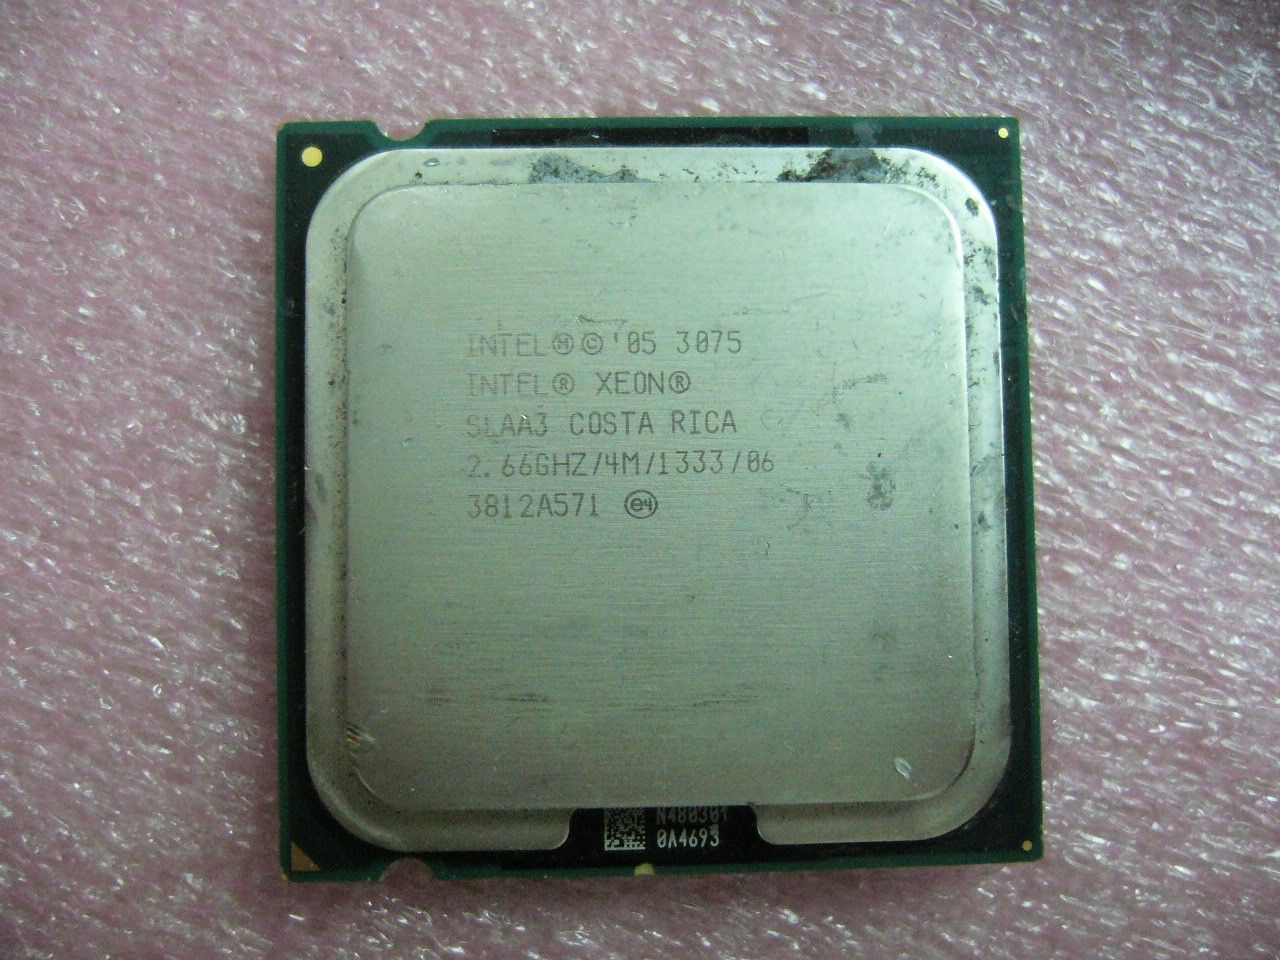 INTEL Dual Cores Xeon 3075 CPU 2.66GHz 4MB/1333Mhz LGA775 SLAA3 - zum Schließen ins Bild klicken